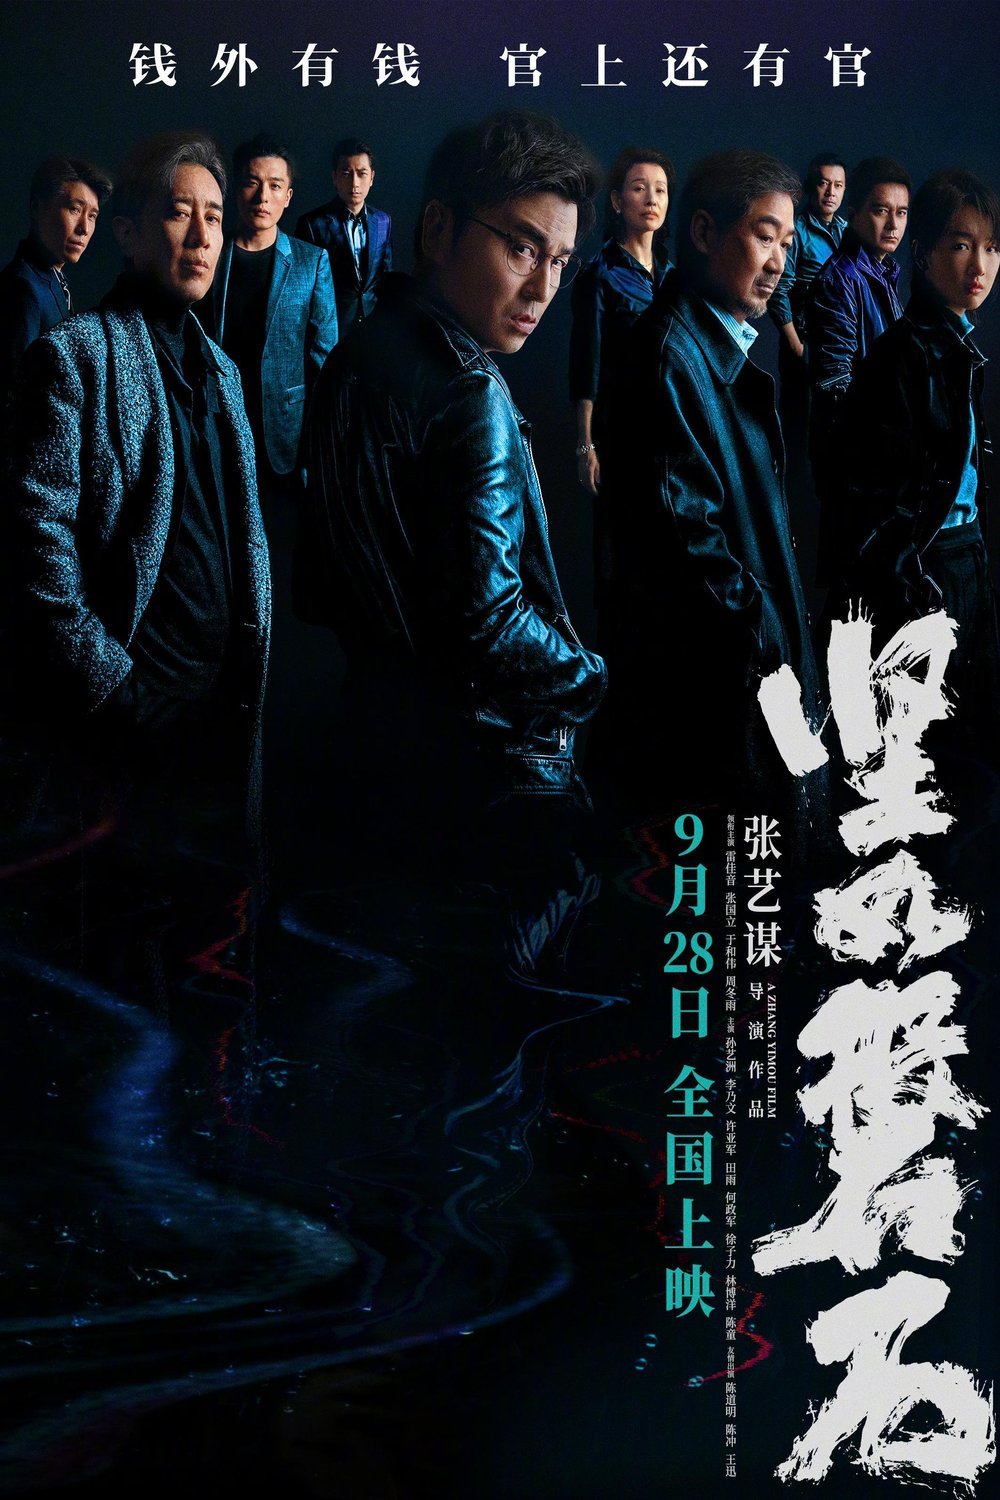 Mandarin poster of the movie Jian ru pan shi